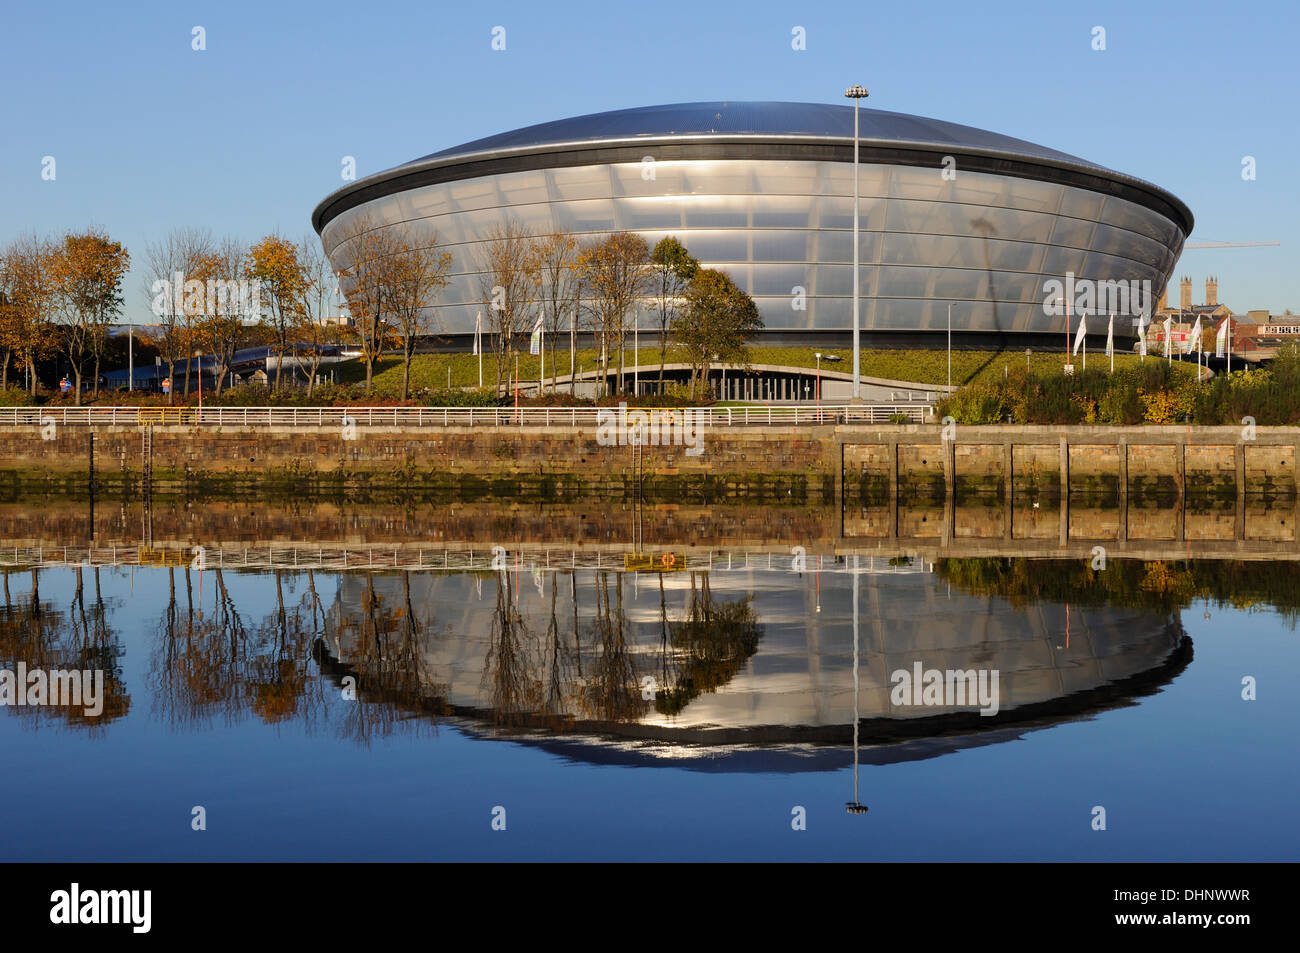 La salle de concerts Arena Hydro sur les rives de la rivière Clyde à Glasgow, Écosse, Royaume-Uni Banque D'Images